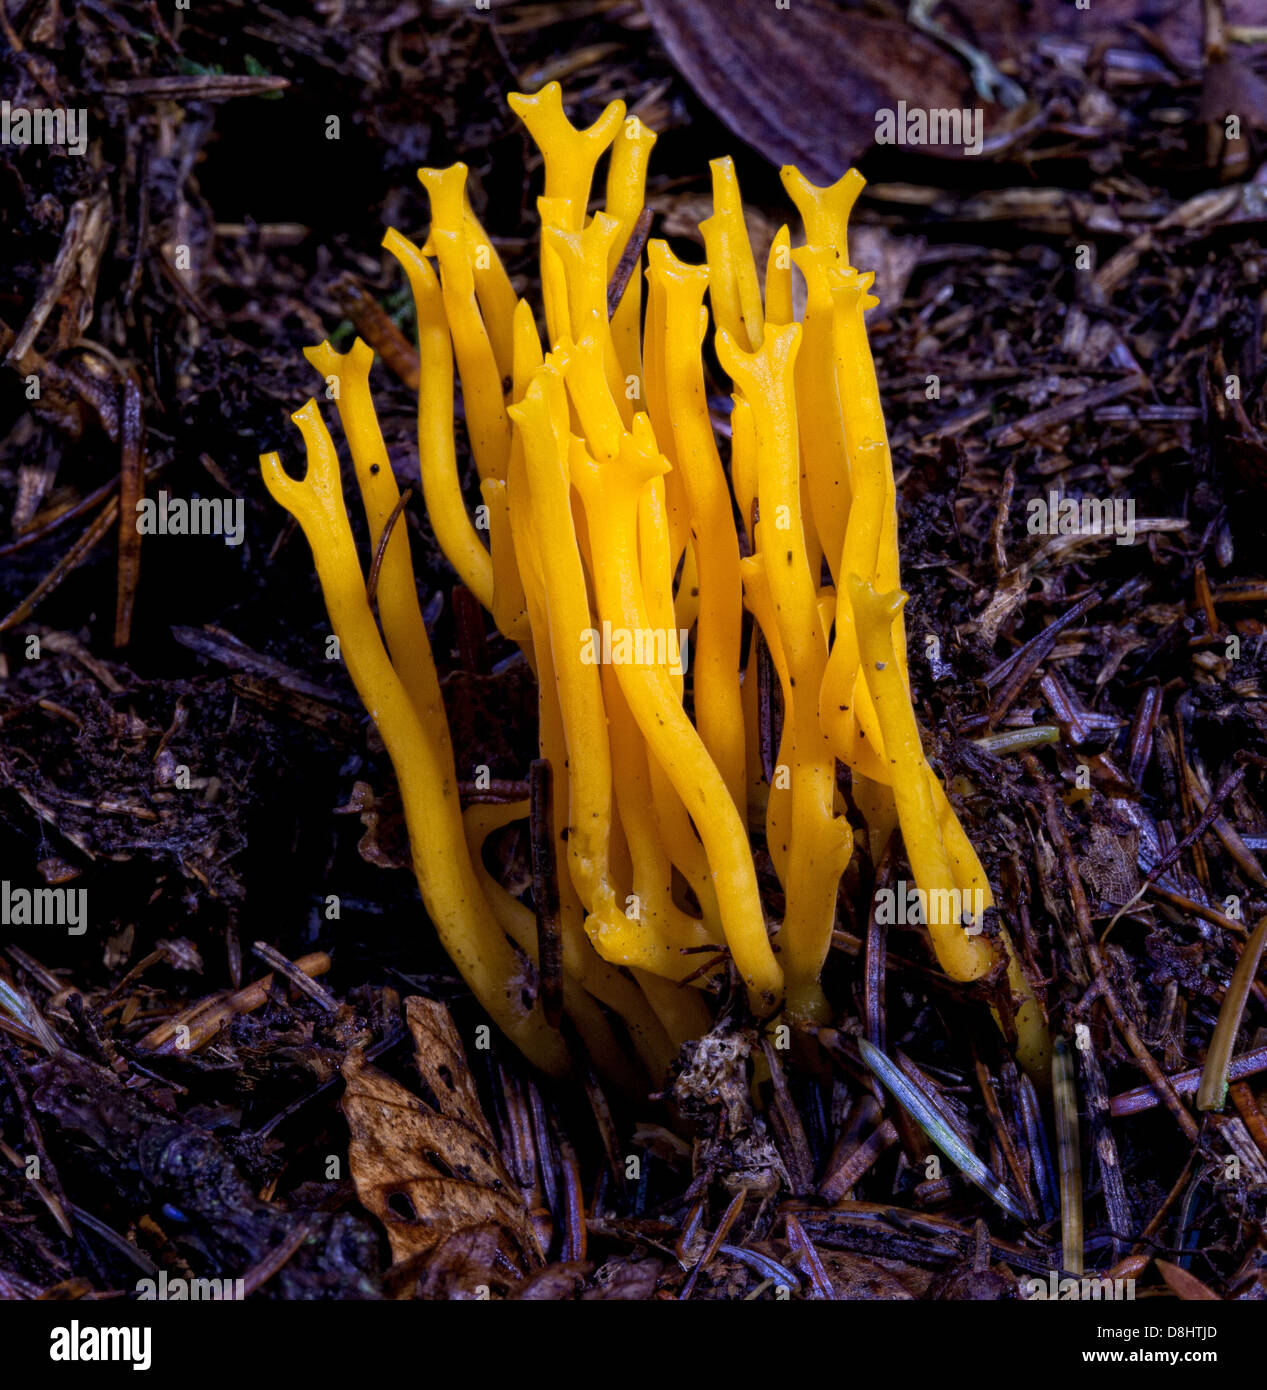 Calocera viscosa, communément connu sous le nom de champignons jaune stagshorn, trouvé dans les bois, en Écosse, au Royaume-Uni Banque D'Images